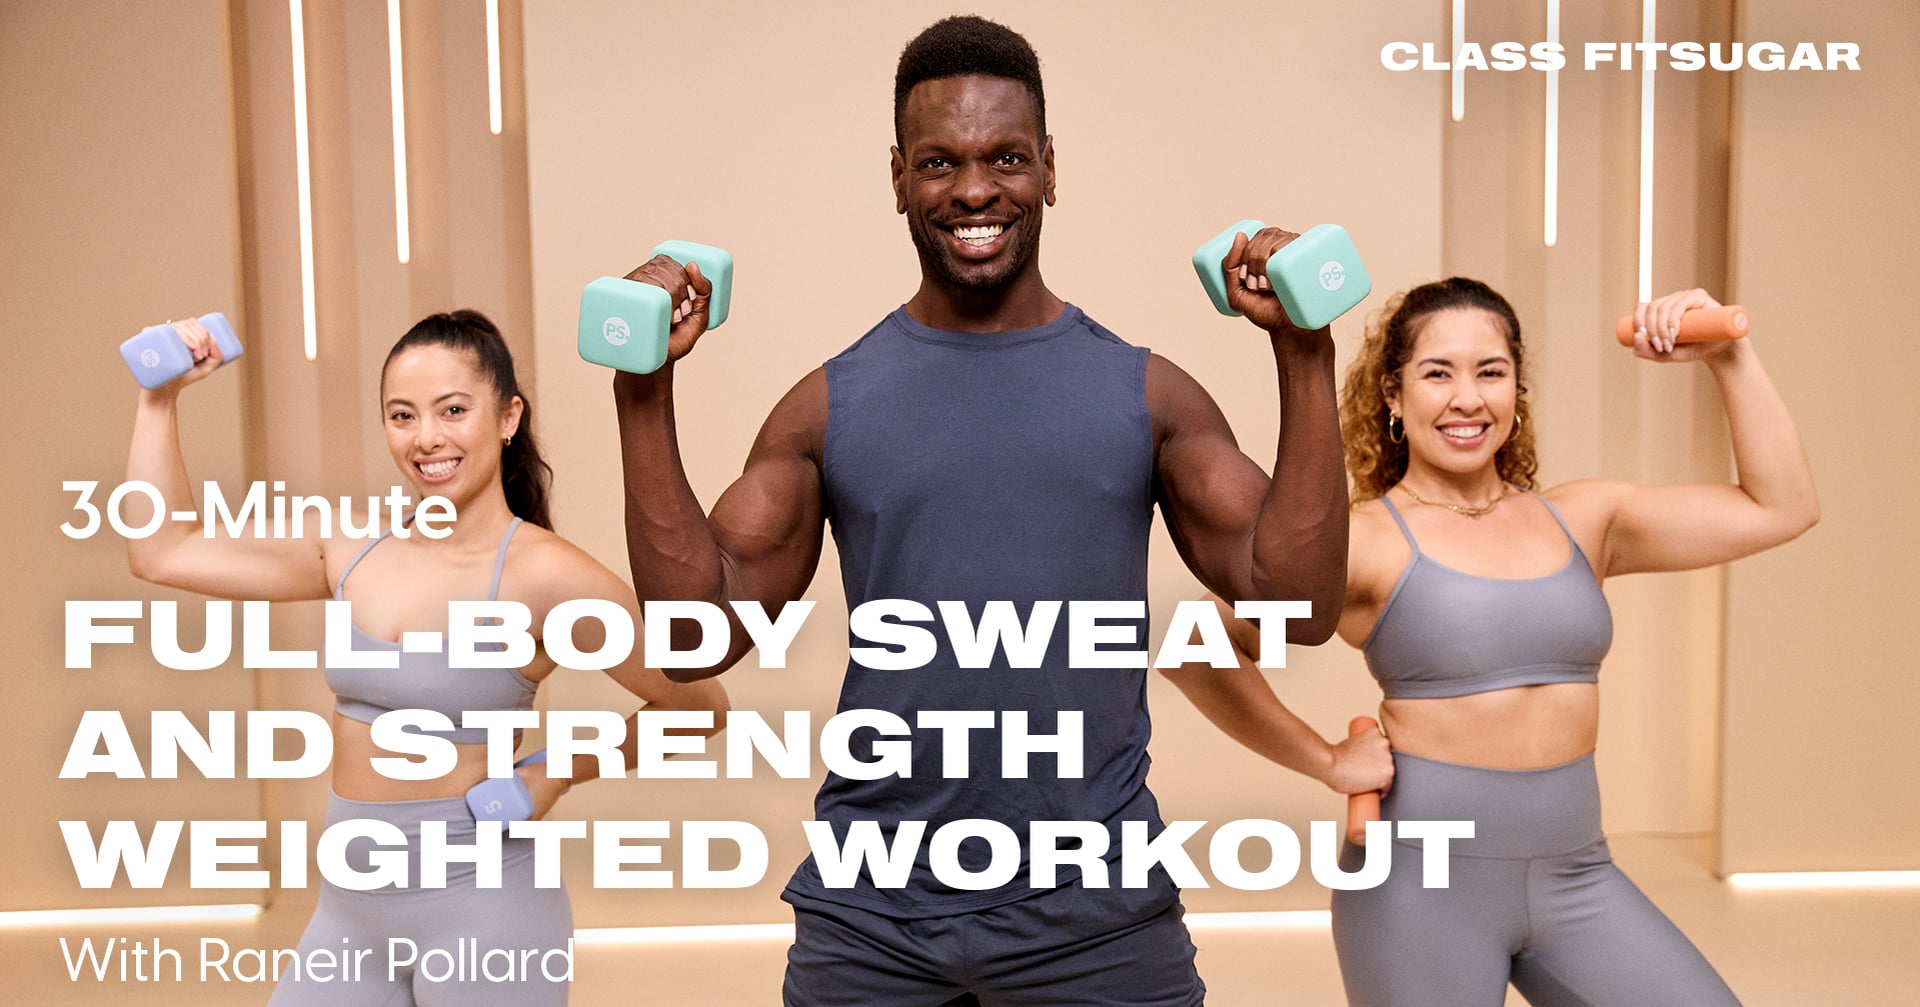 Saturday Sweat: Total Body Circuit